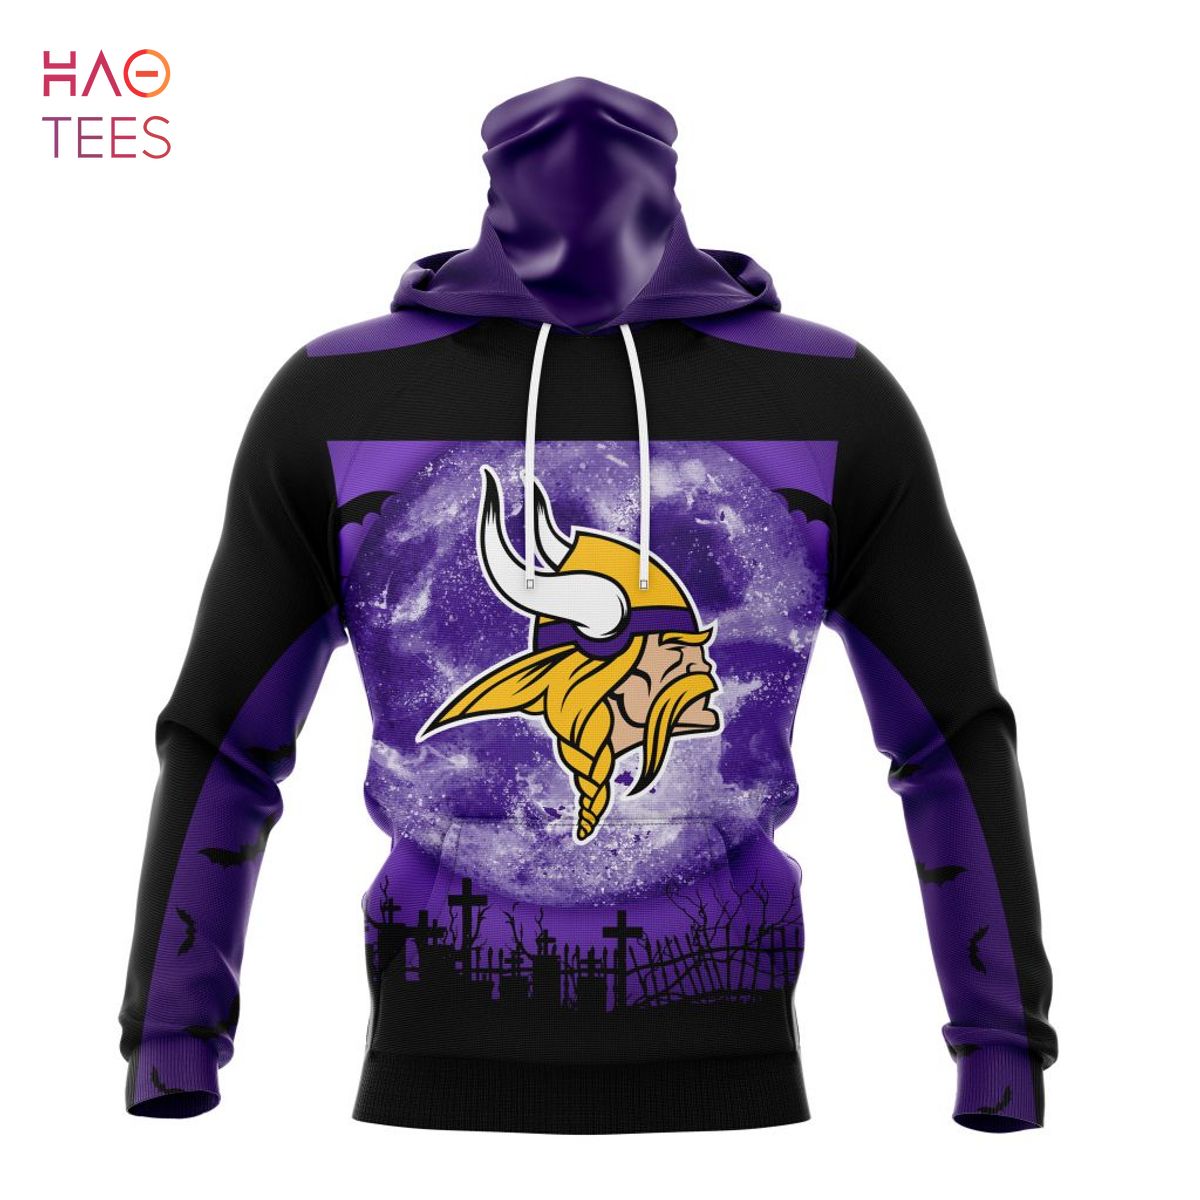 minnesota vikings purple hoodie